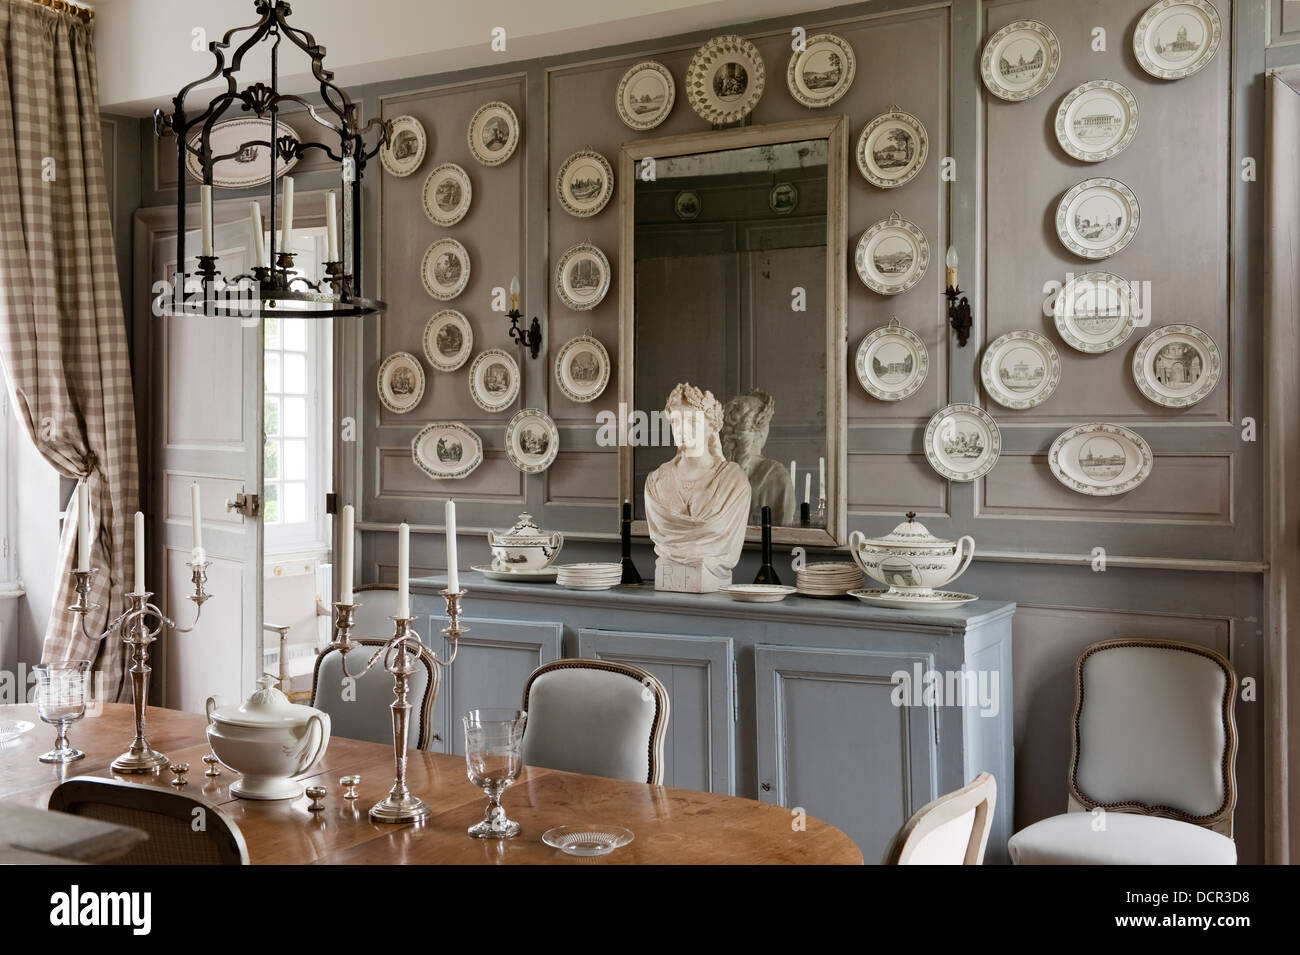 Französisch antike Stühle und Tisch im eleganten Speisesaal mit hölzernen  Wandverkleidung und dekorativer Porzellanteller Stockfotografie - Alamy